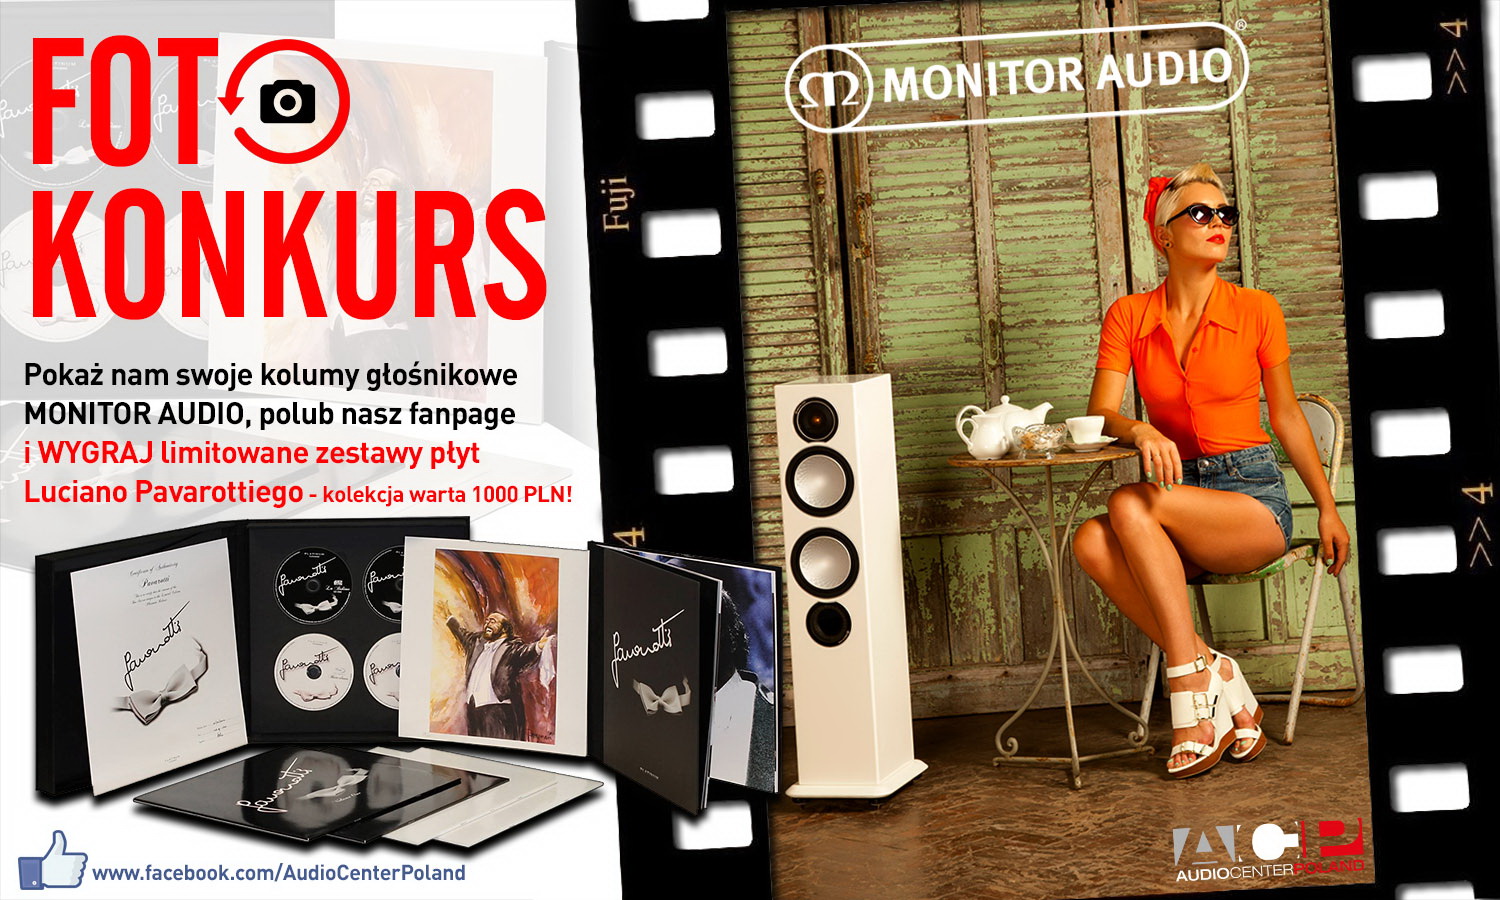 „Foto konkurs Monitor Audio” – konkurs Audio Center Poland